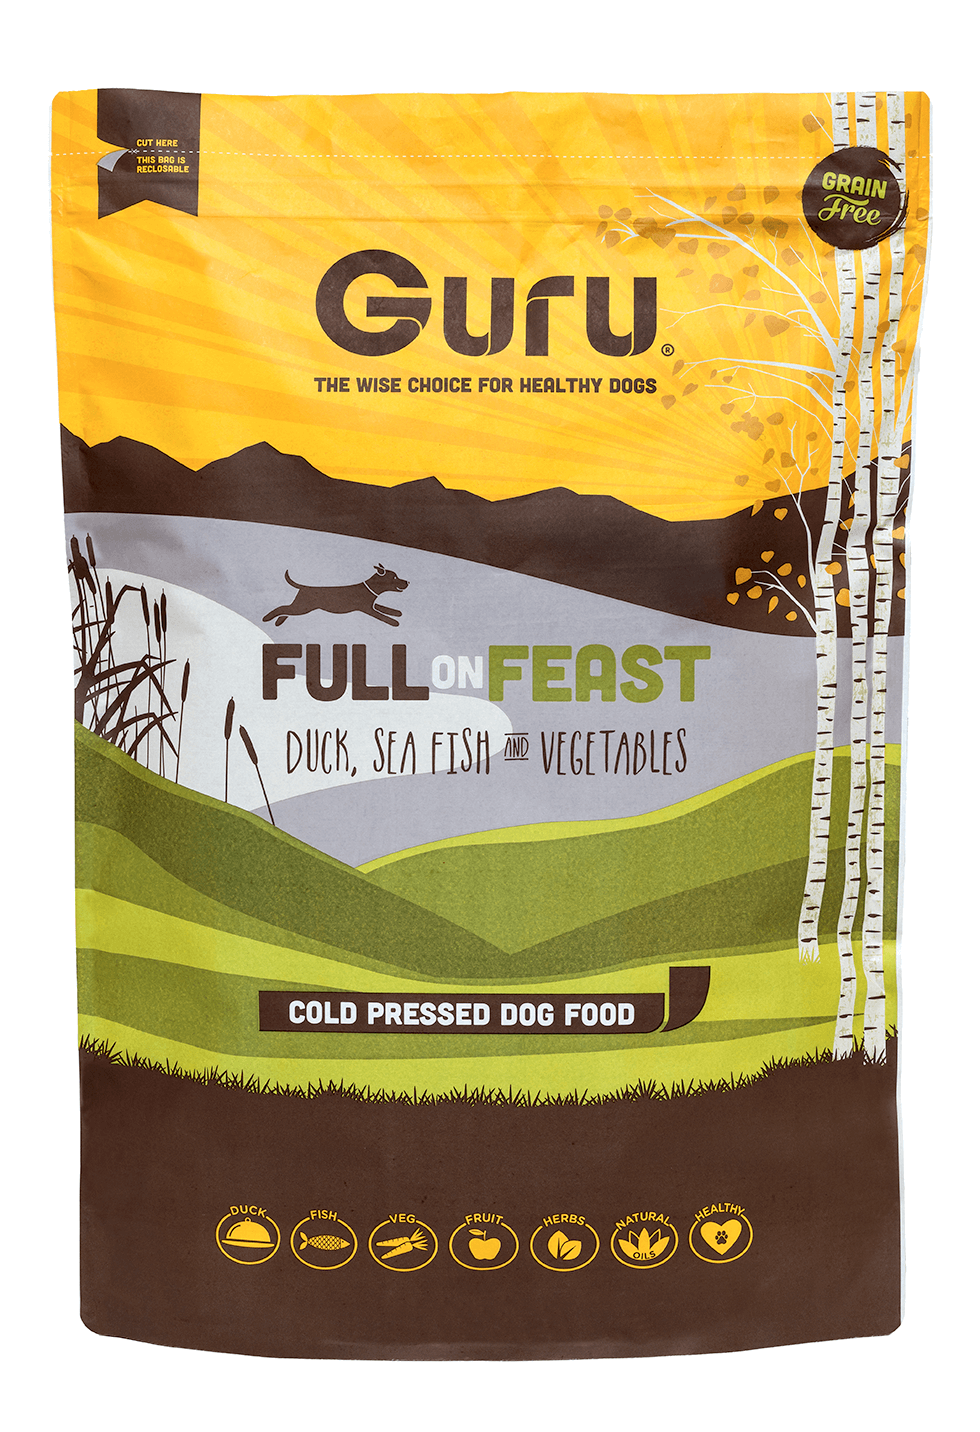 Guru Dog Food Packaging